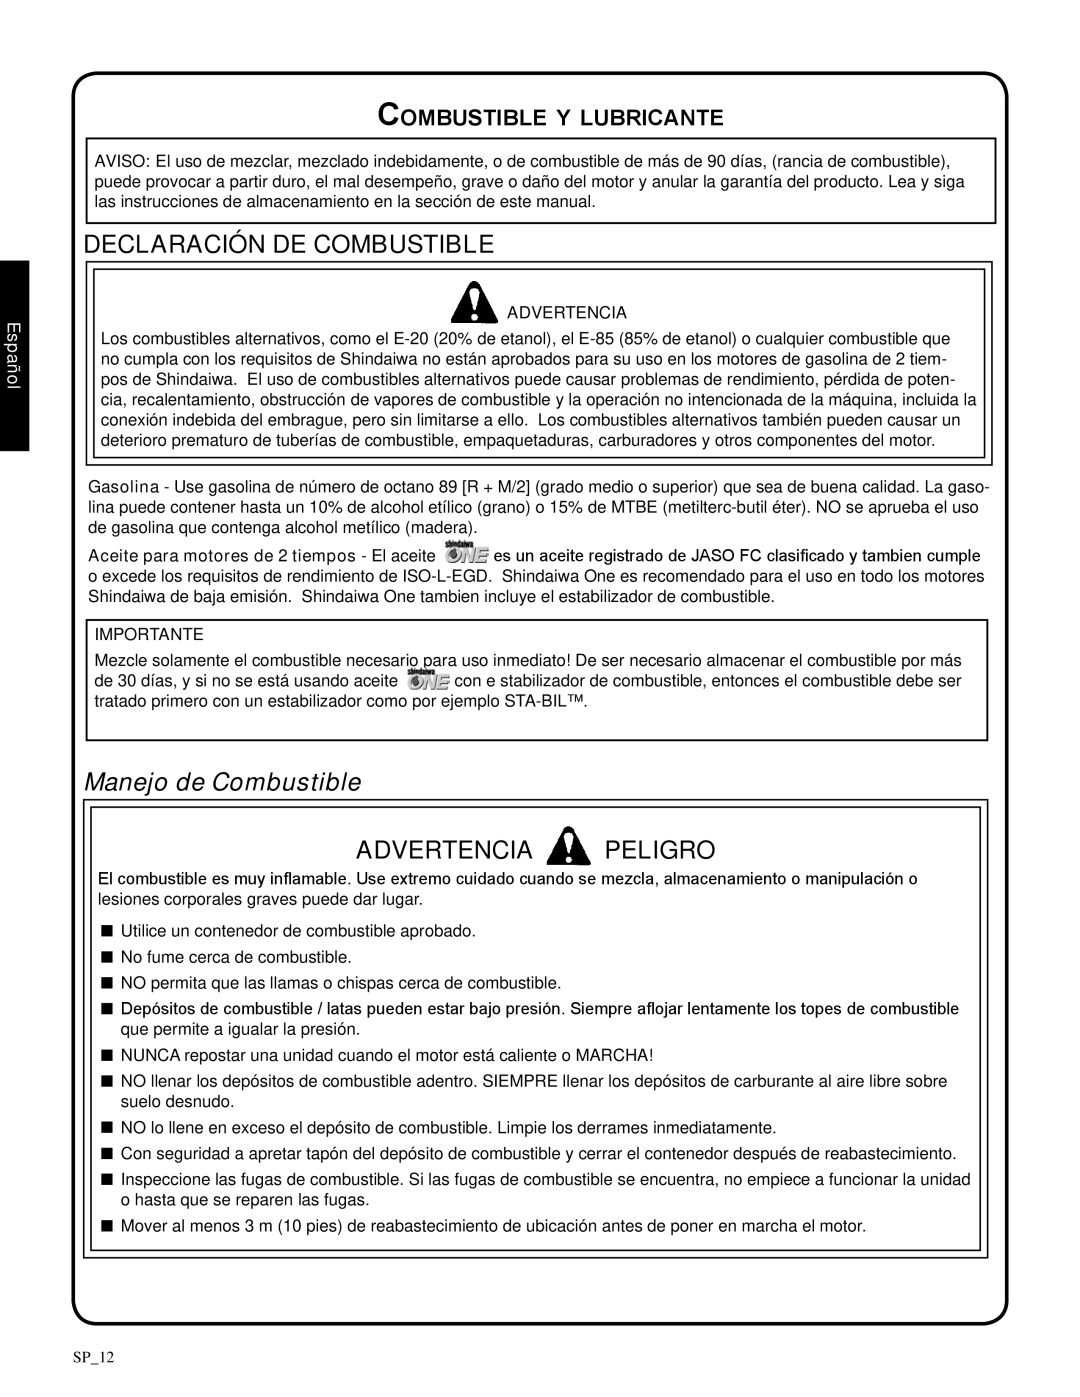 Shindaiwa 82085 Declaración de combustible, Manejo de Combustible, Combustible y lubricante, Advertencia Peligro, Español 